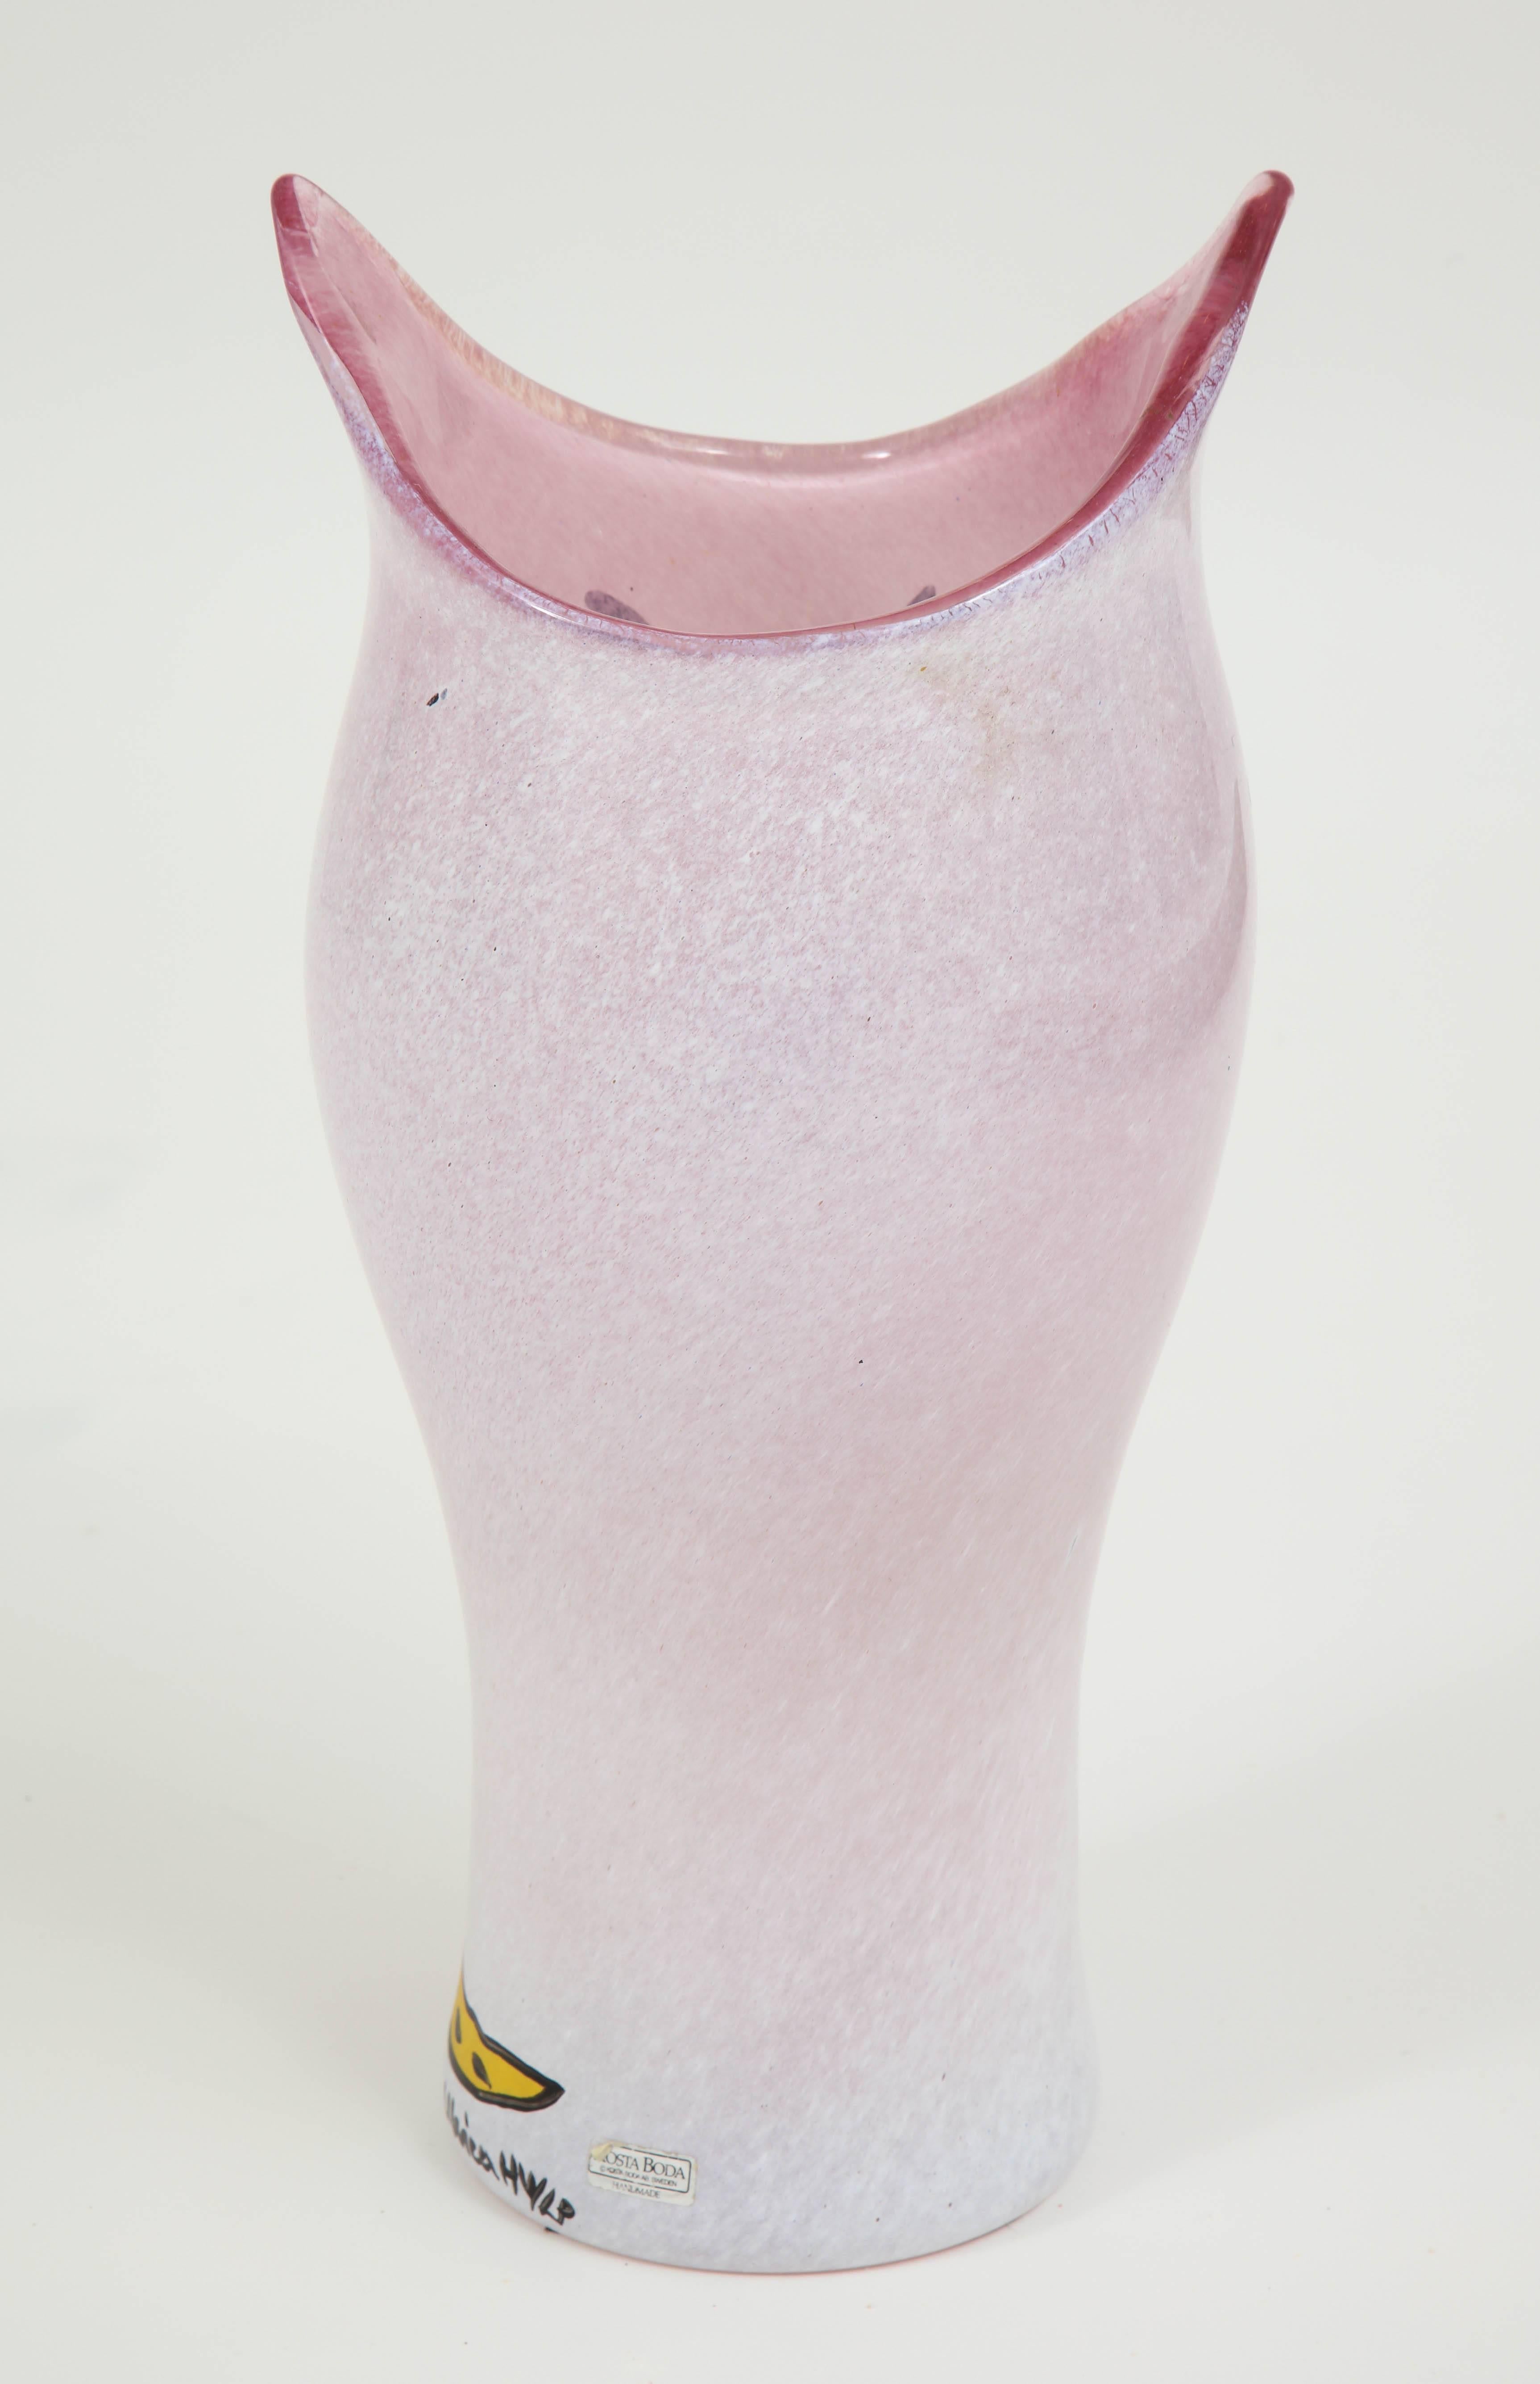 Fin du 20e siècle Vase de Kosta Boda, Suède, verre, C 1990, couleurs rose, noir et jaune. en vente